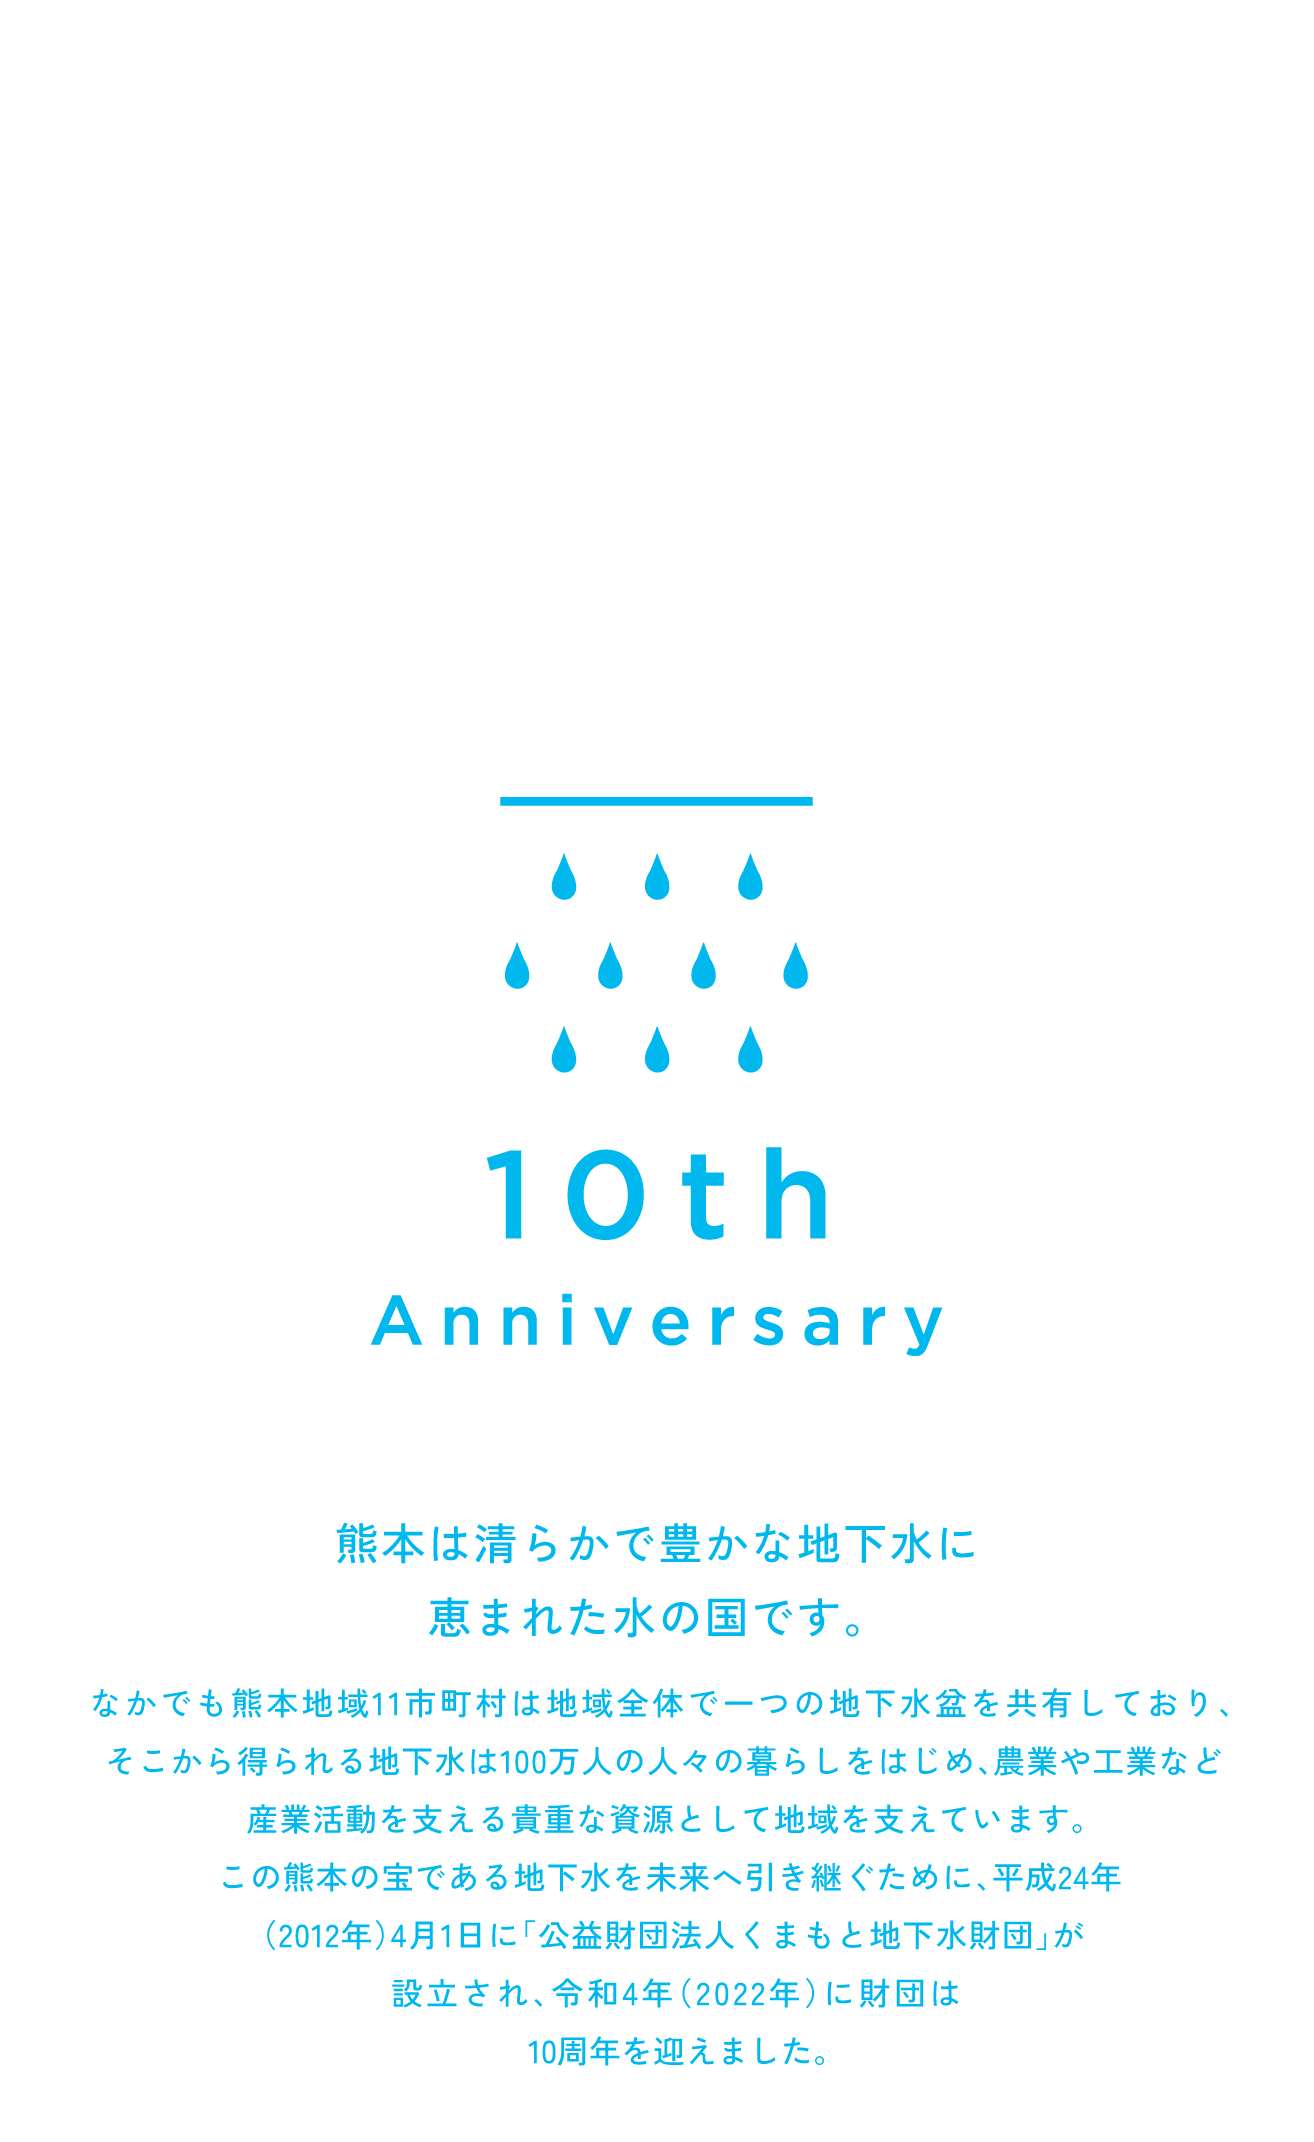 公益財団法人くまもと地下水財団」が設立され、令和4年（2022年）に財団は10周年を迎えました